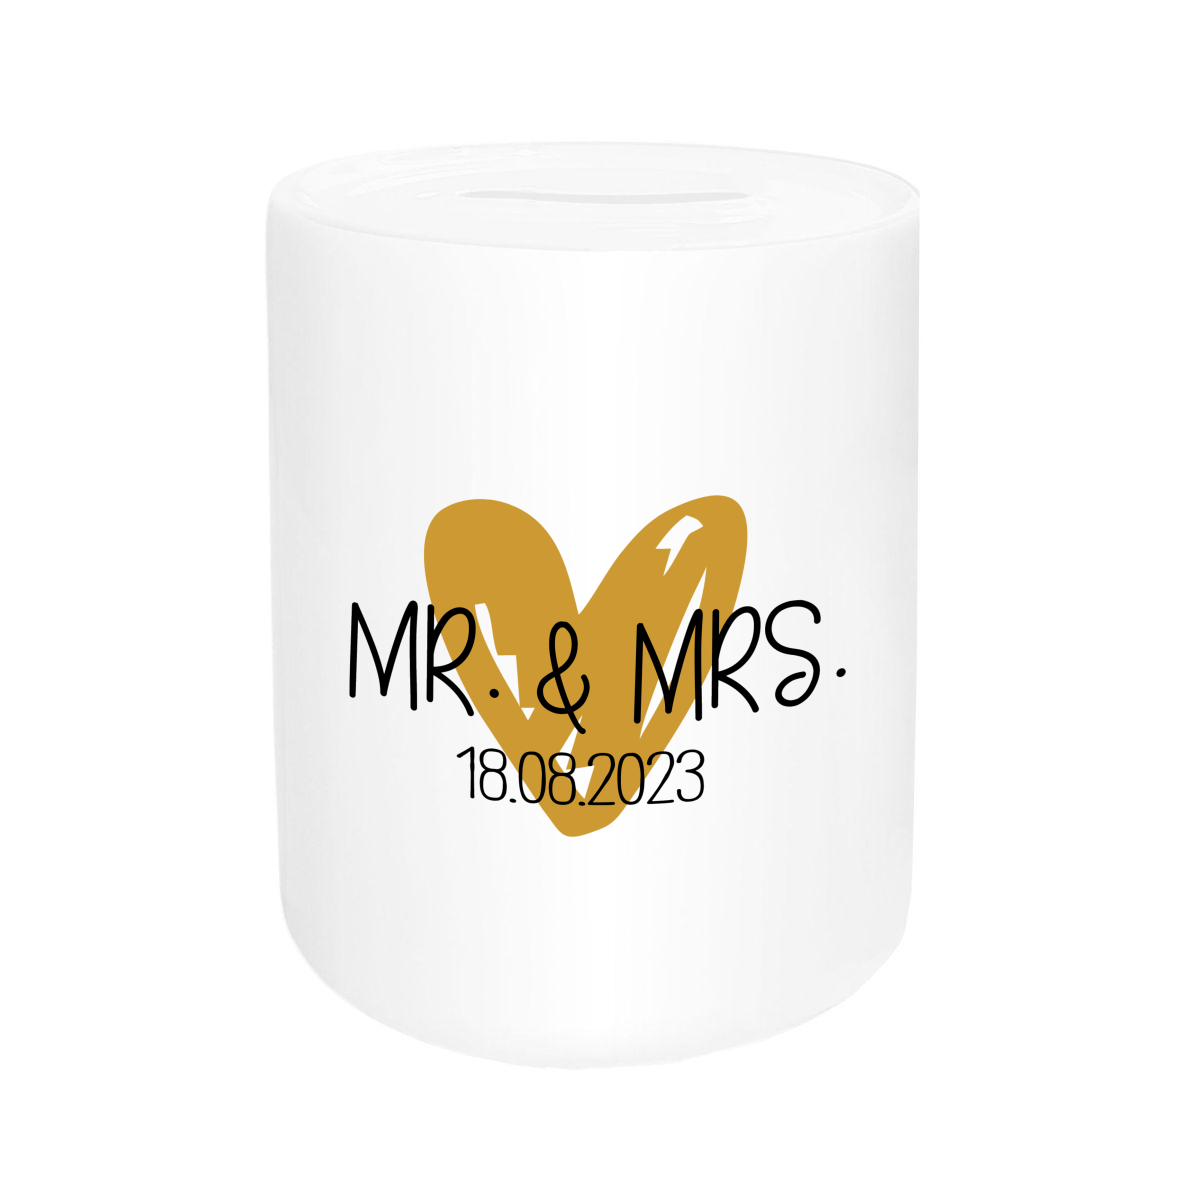 Spardose - "Mr. & Mrs." mit Wunschdatum